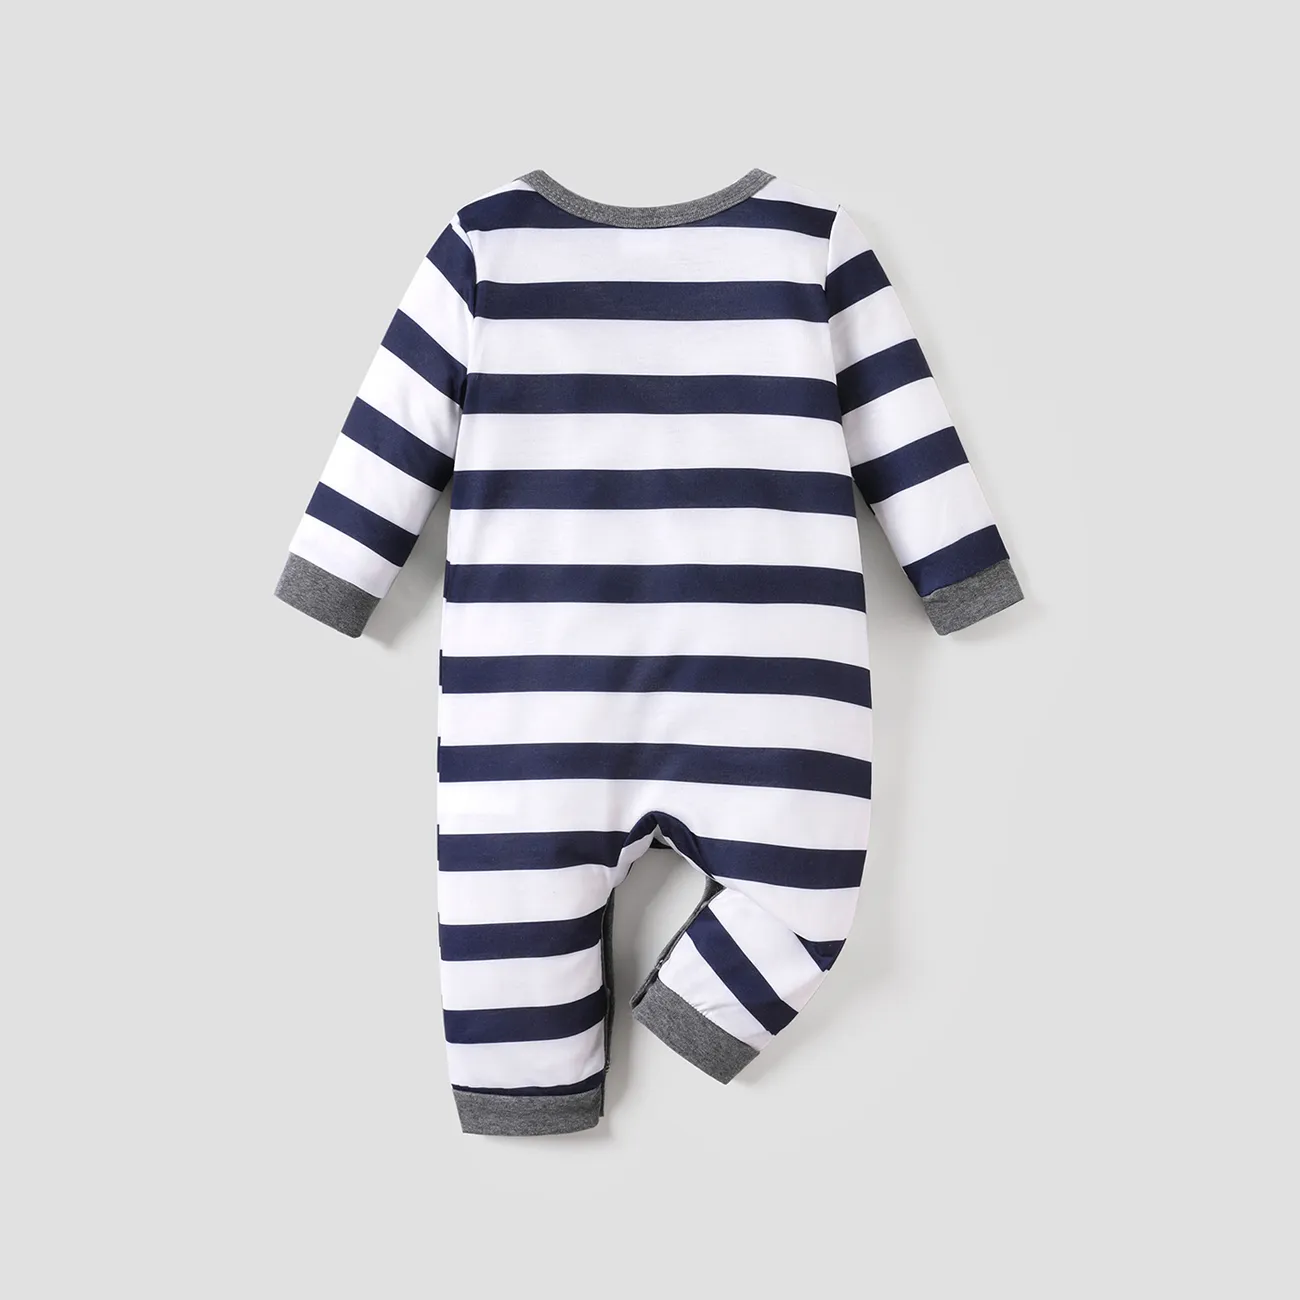 Bebé Menino Costuras de tecido Casual Manga comprida Macacão Azul Escuro / Branco big image 1